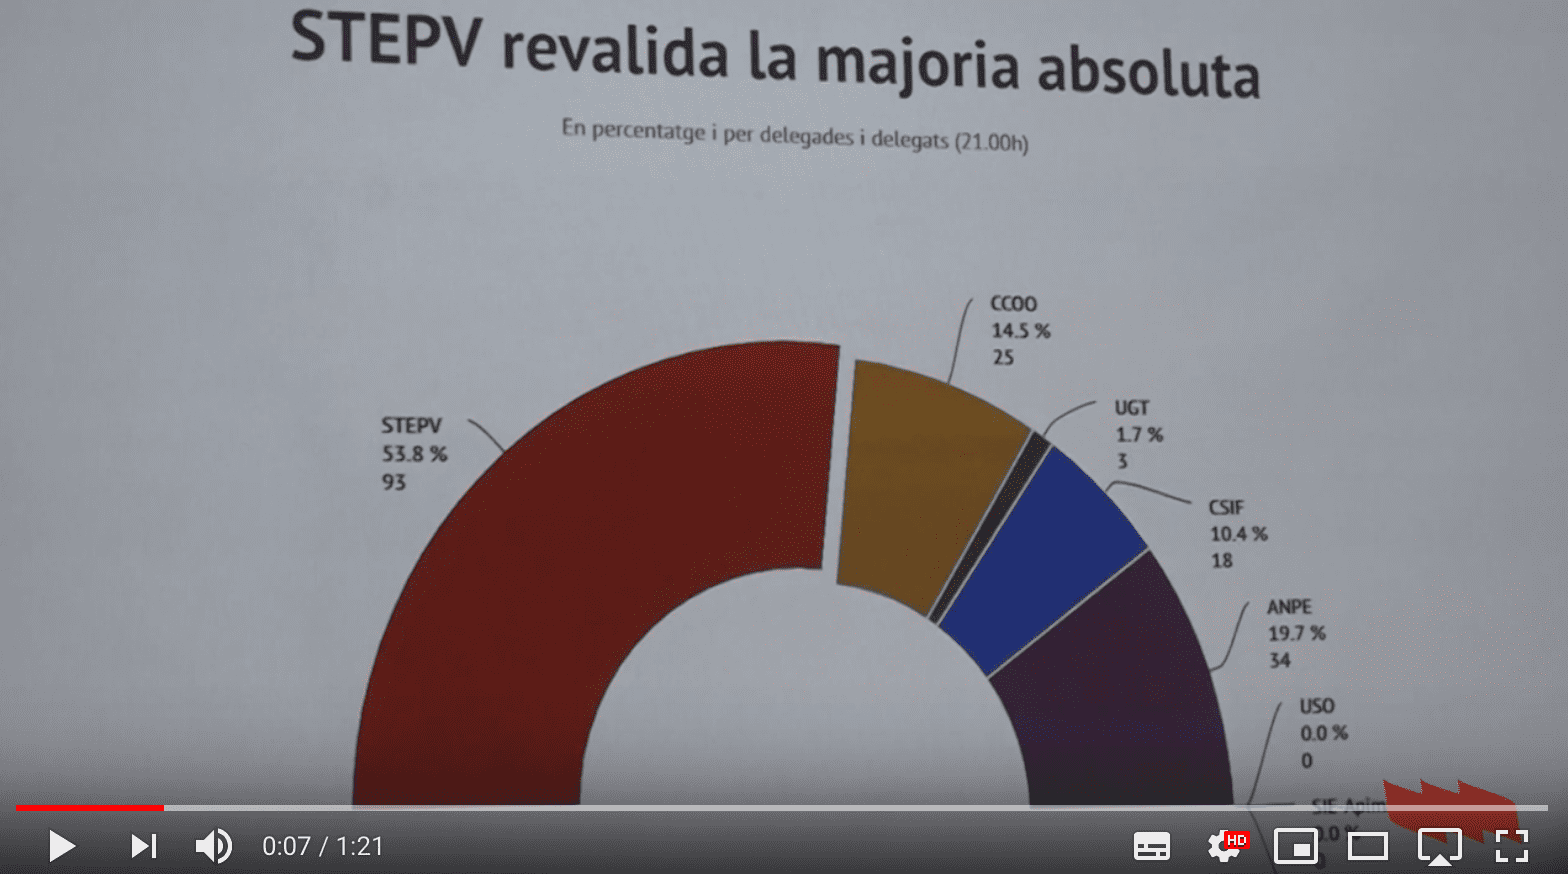 STEPV revalida la majoria absoluta